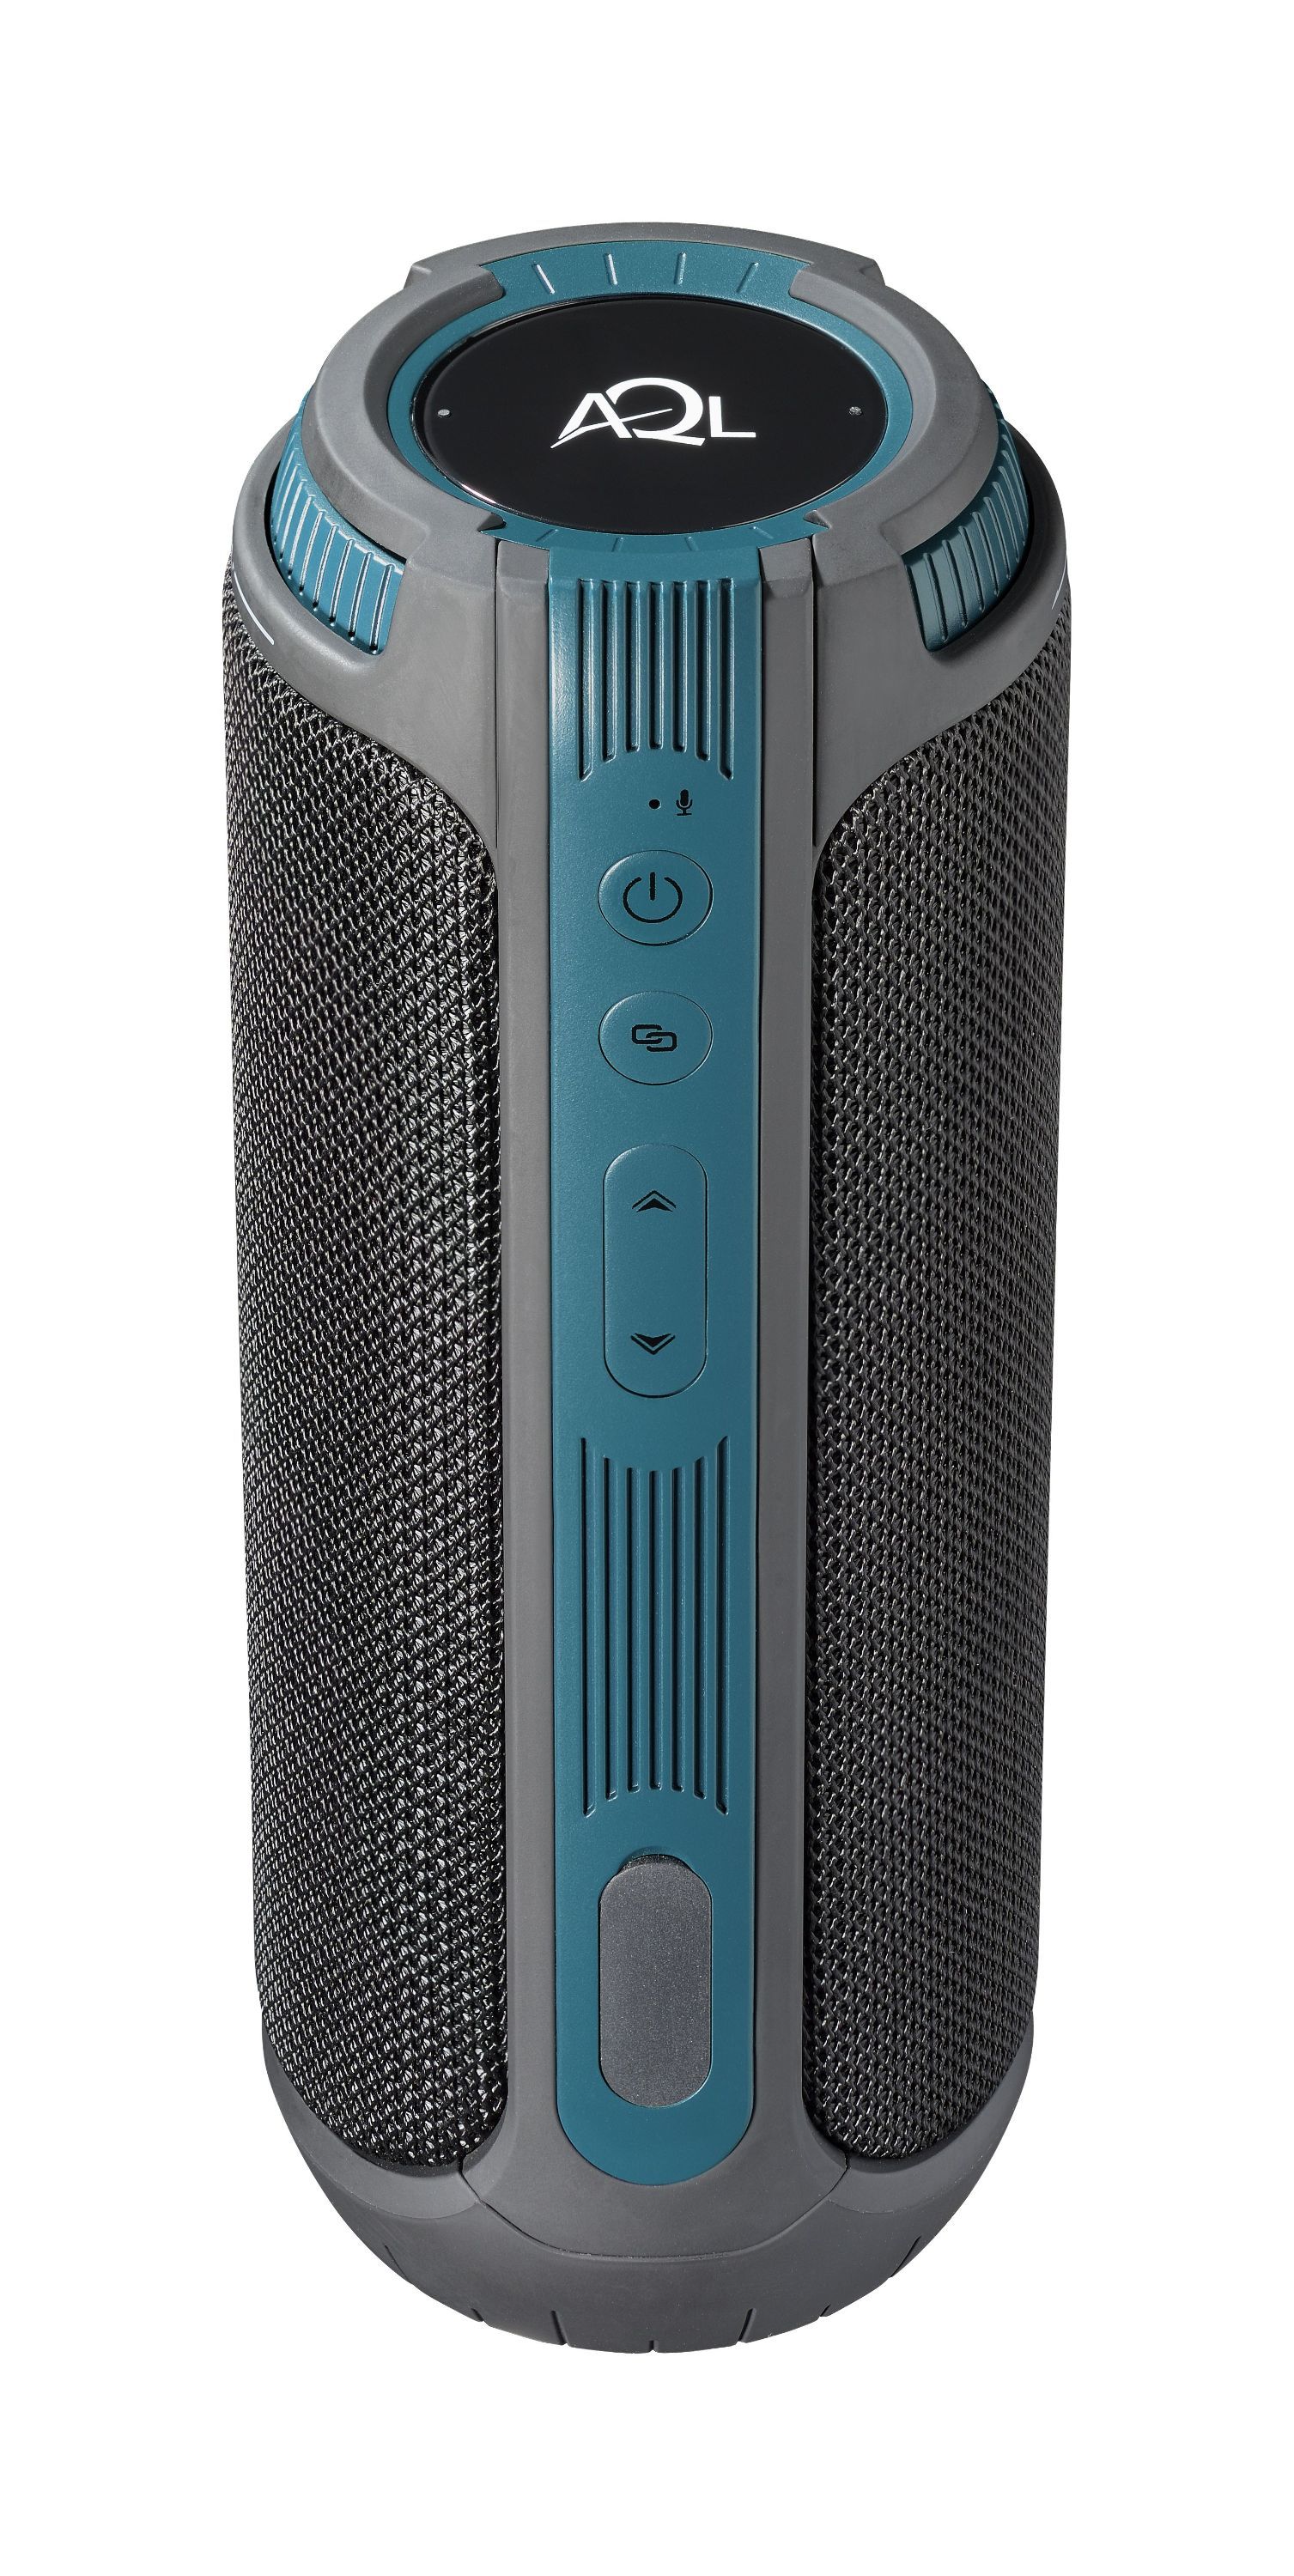 Bezdrátový voděodolný reproduktor Twister, 360° zvuk 20 W, AQL® certifikace, černý